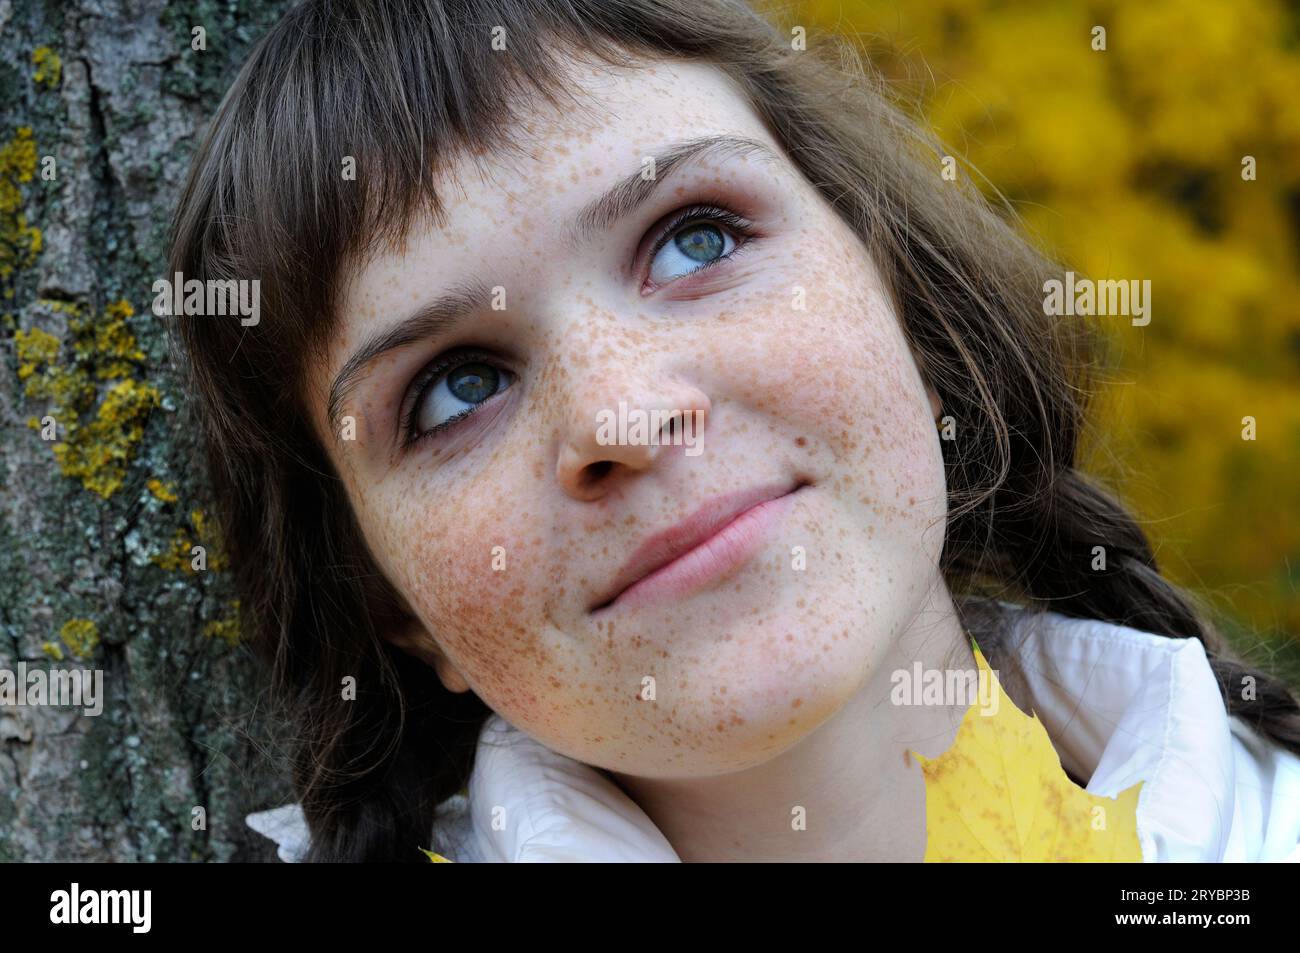 Nahaufnahme eines freckigen Teenagermädchens im Herbstpark Stockfoto